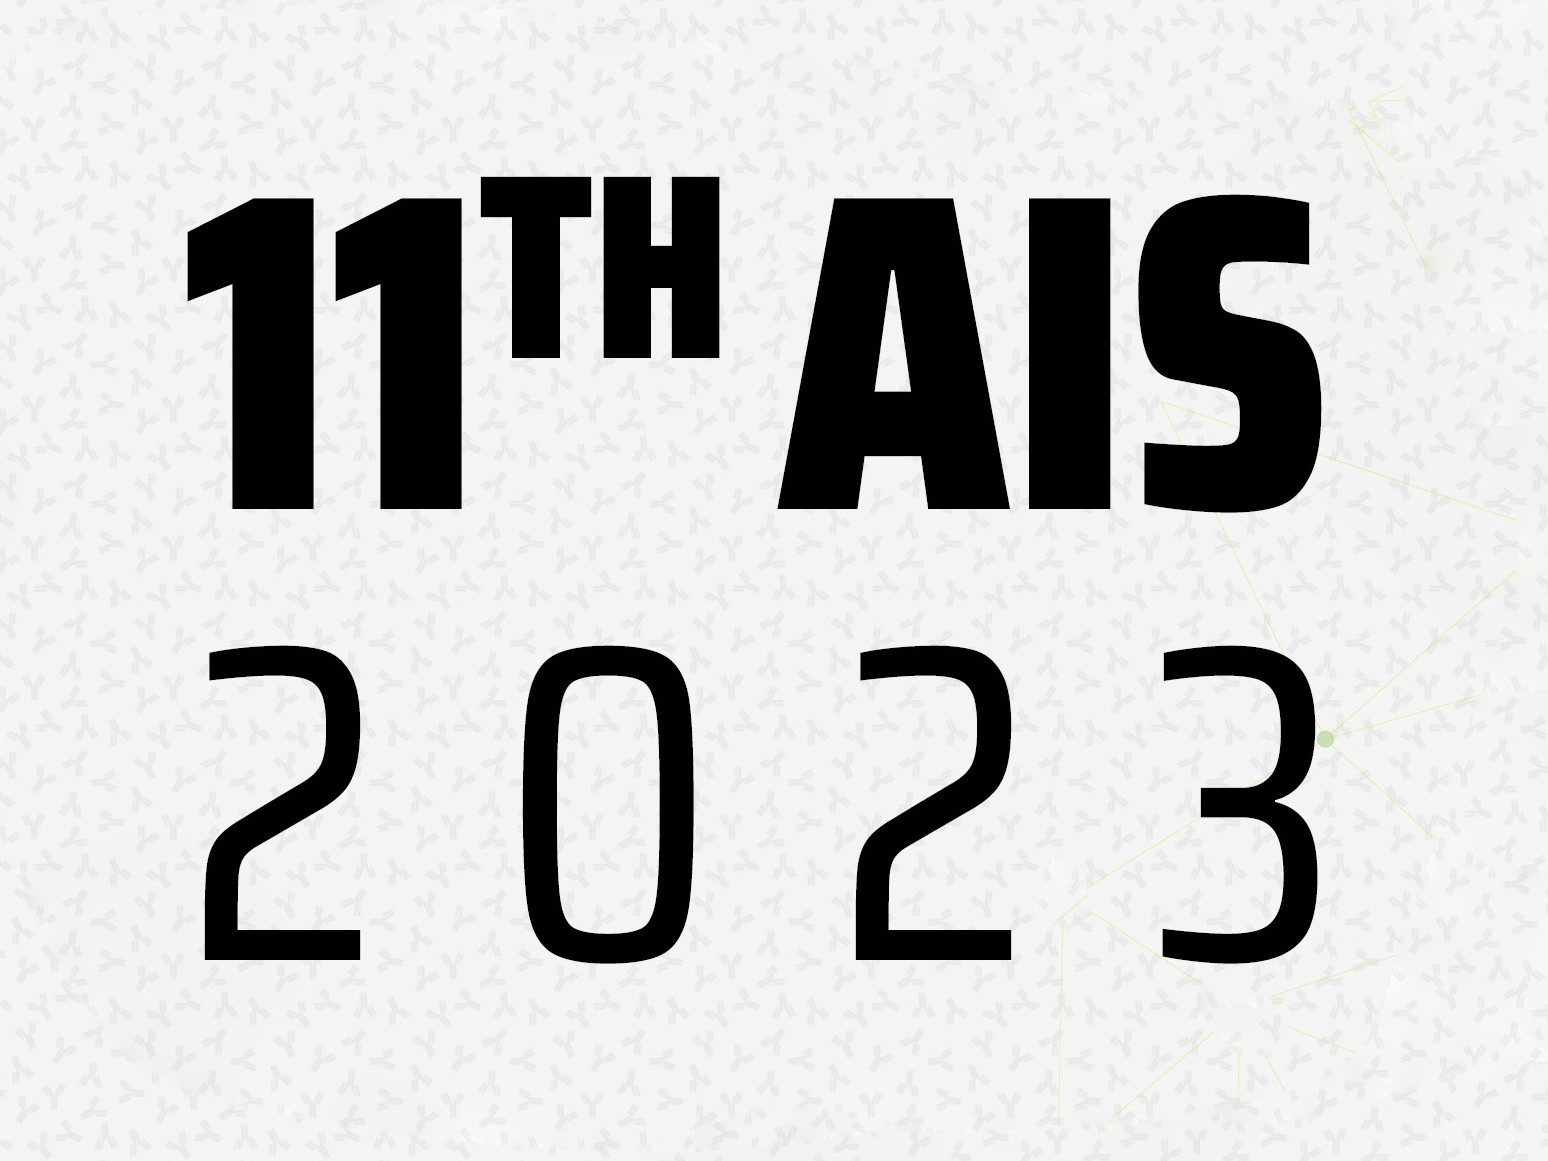 AIS 2023